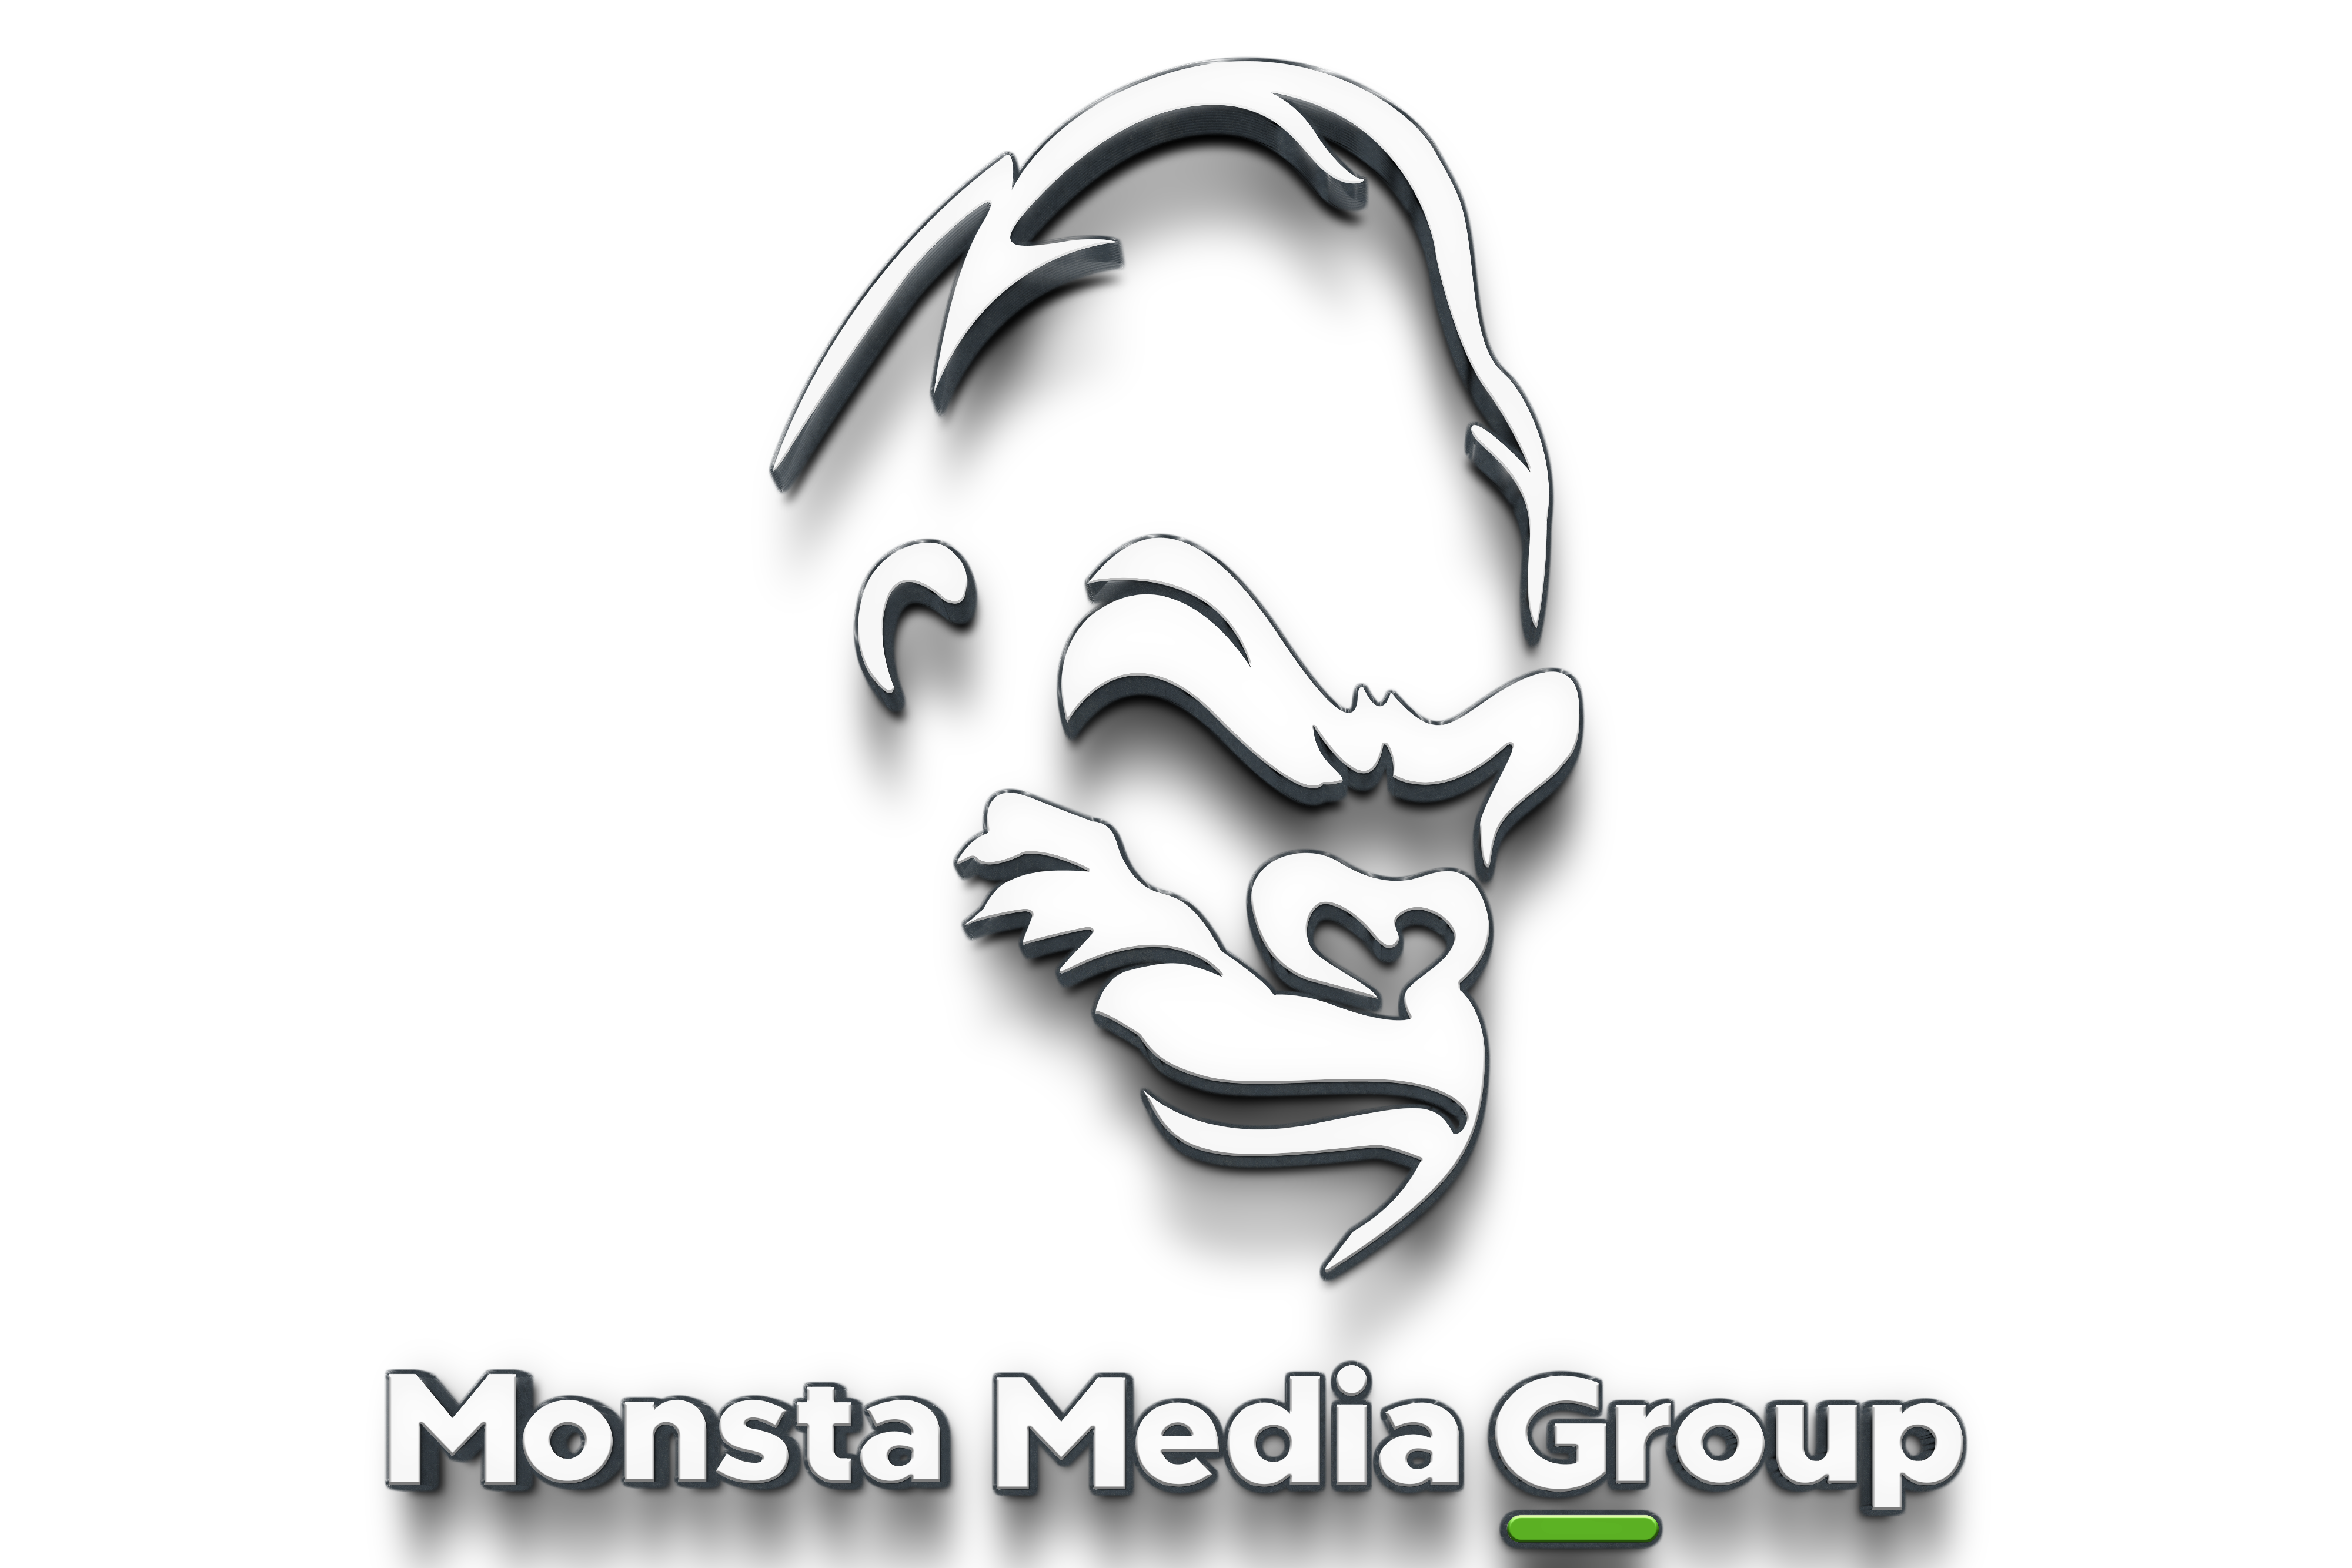 Monsta Media Group